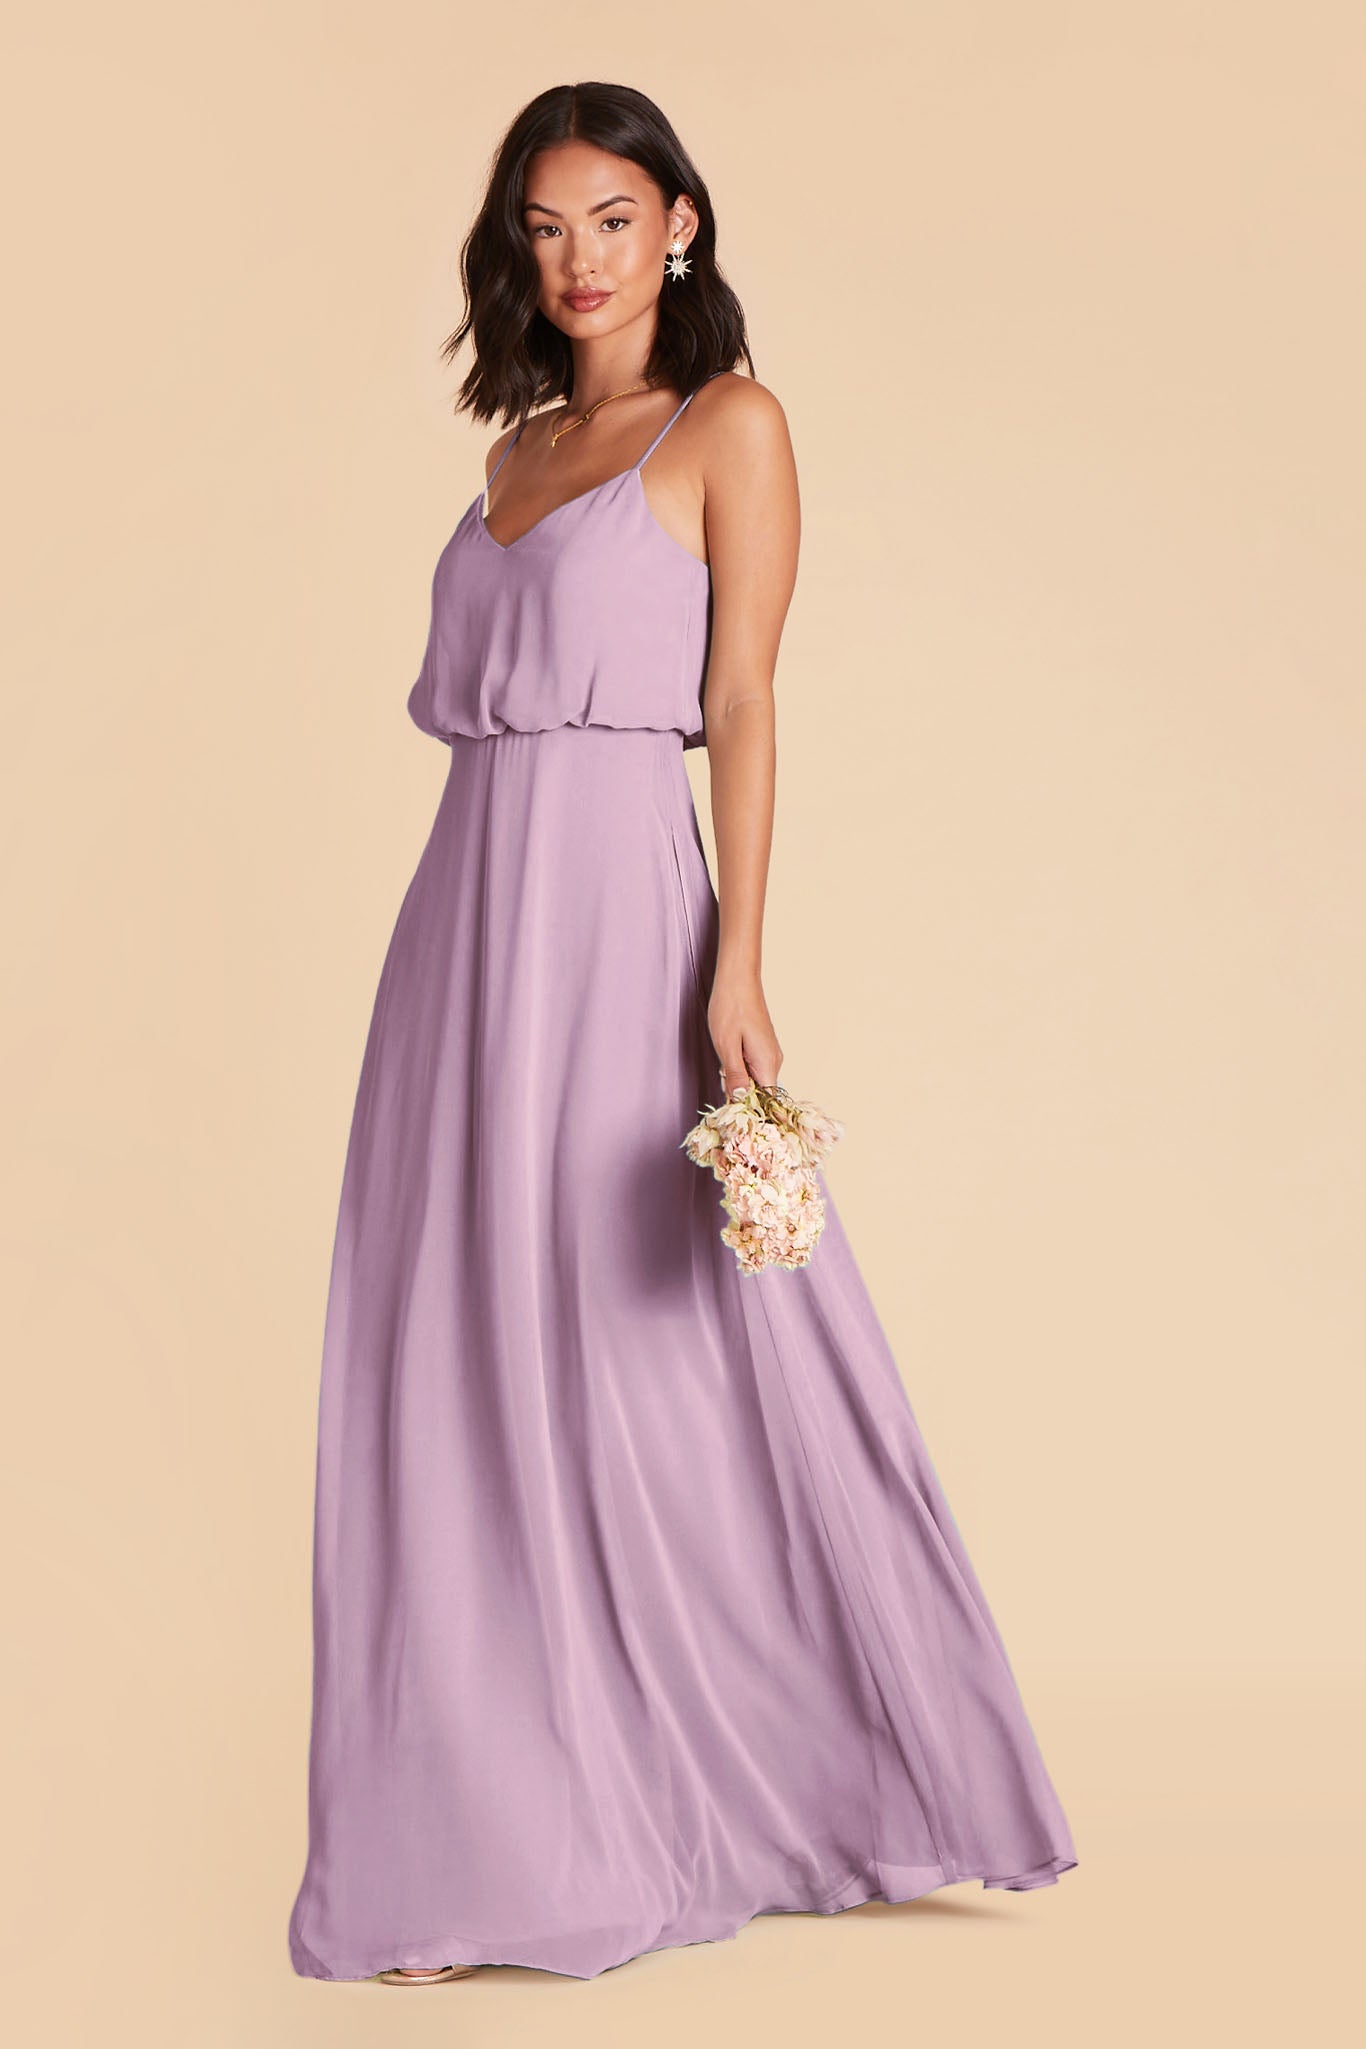 Lavender Gwennie Dress by Birdy Grey